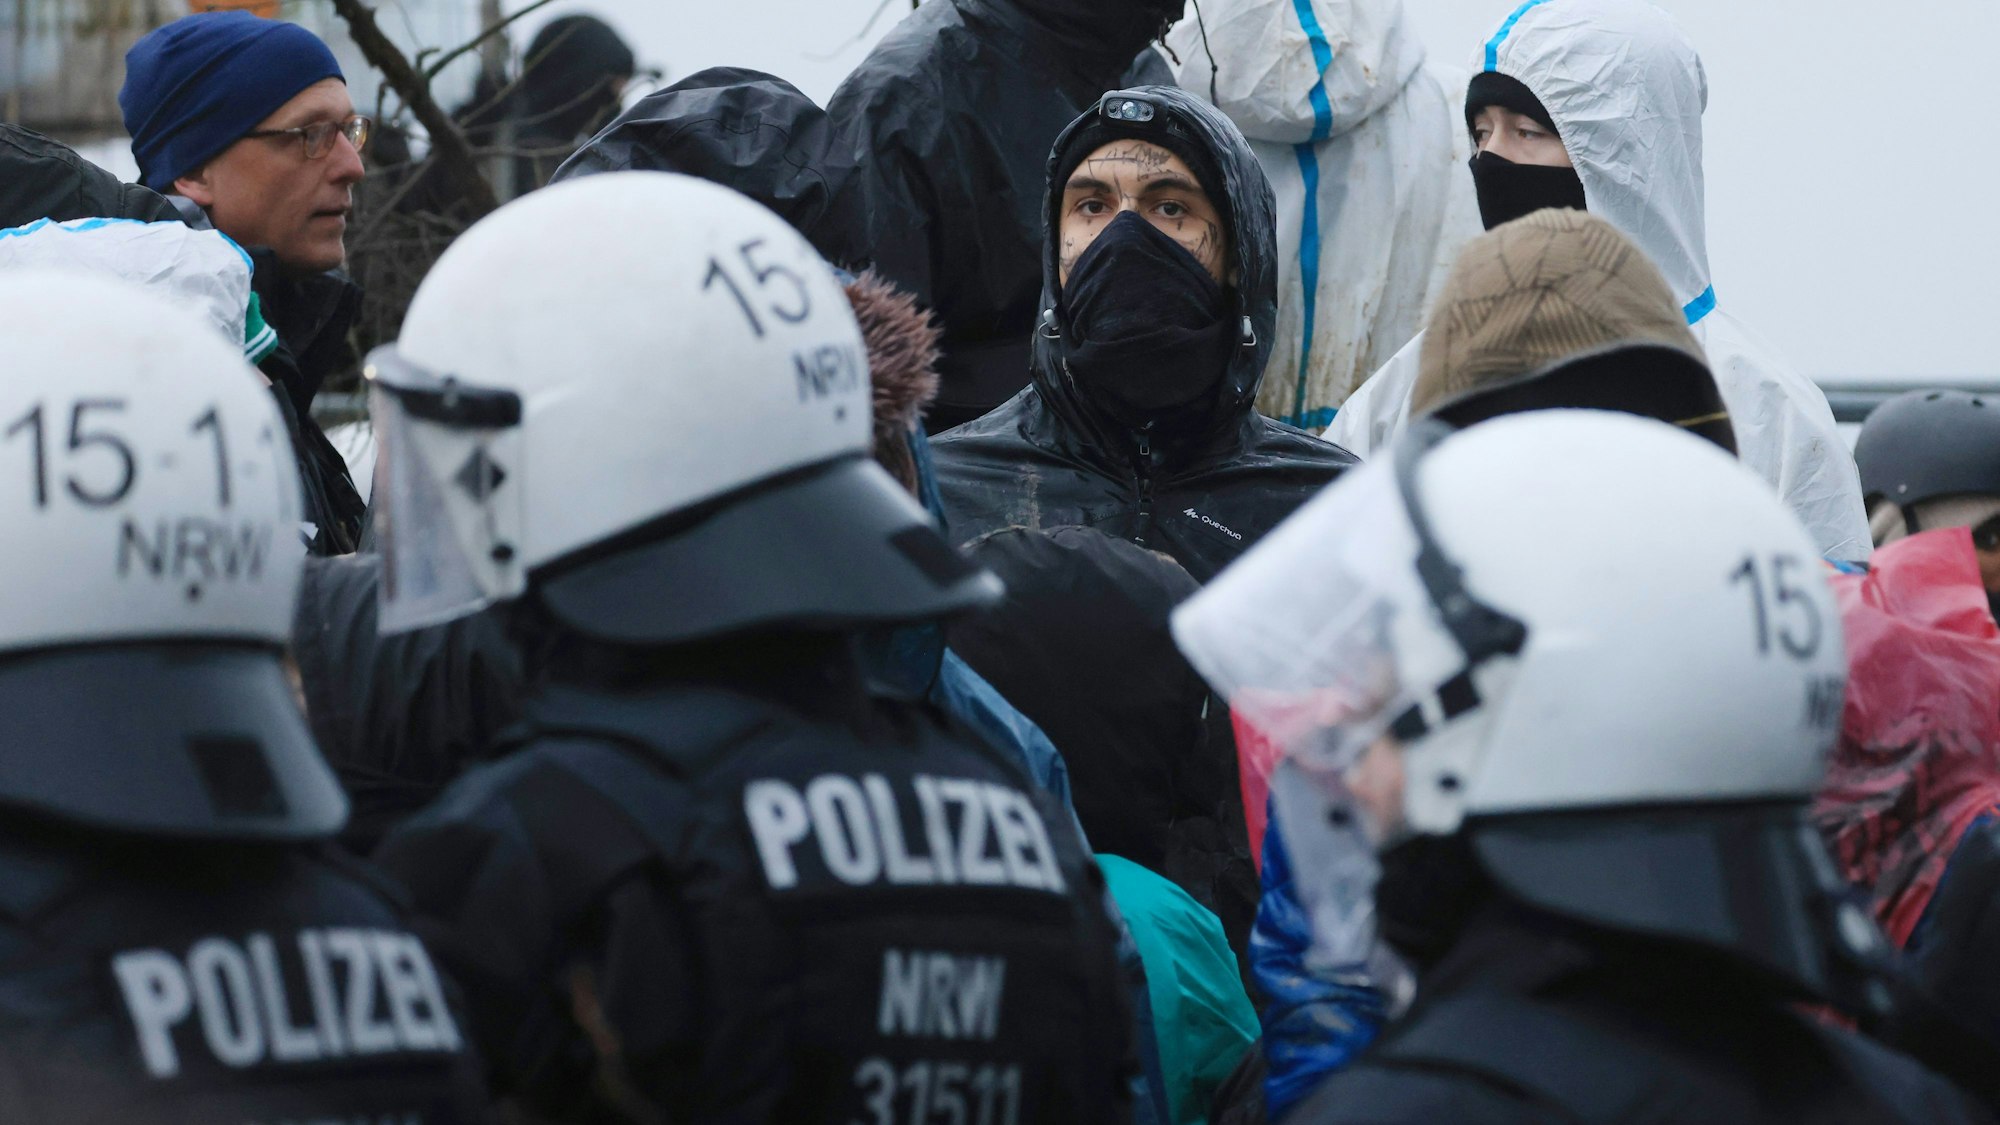 Aktivisten und Polizisten stehen sich am Rande des besetzten Braunkohleorts Lützerath direkt gegenüber.